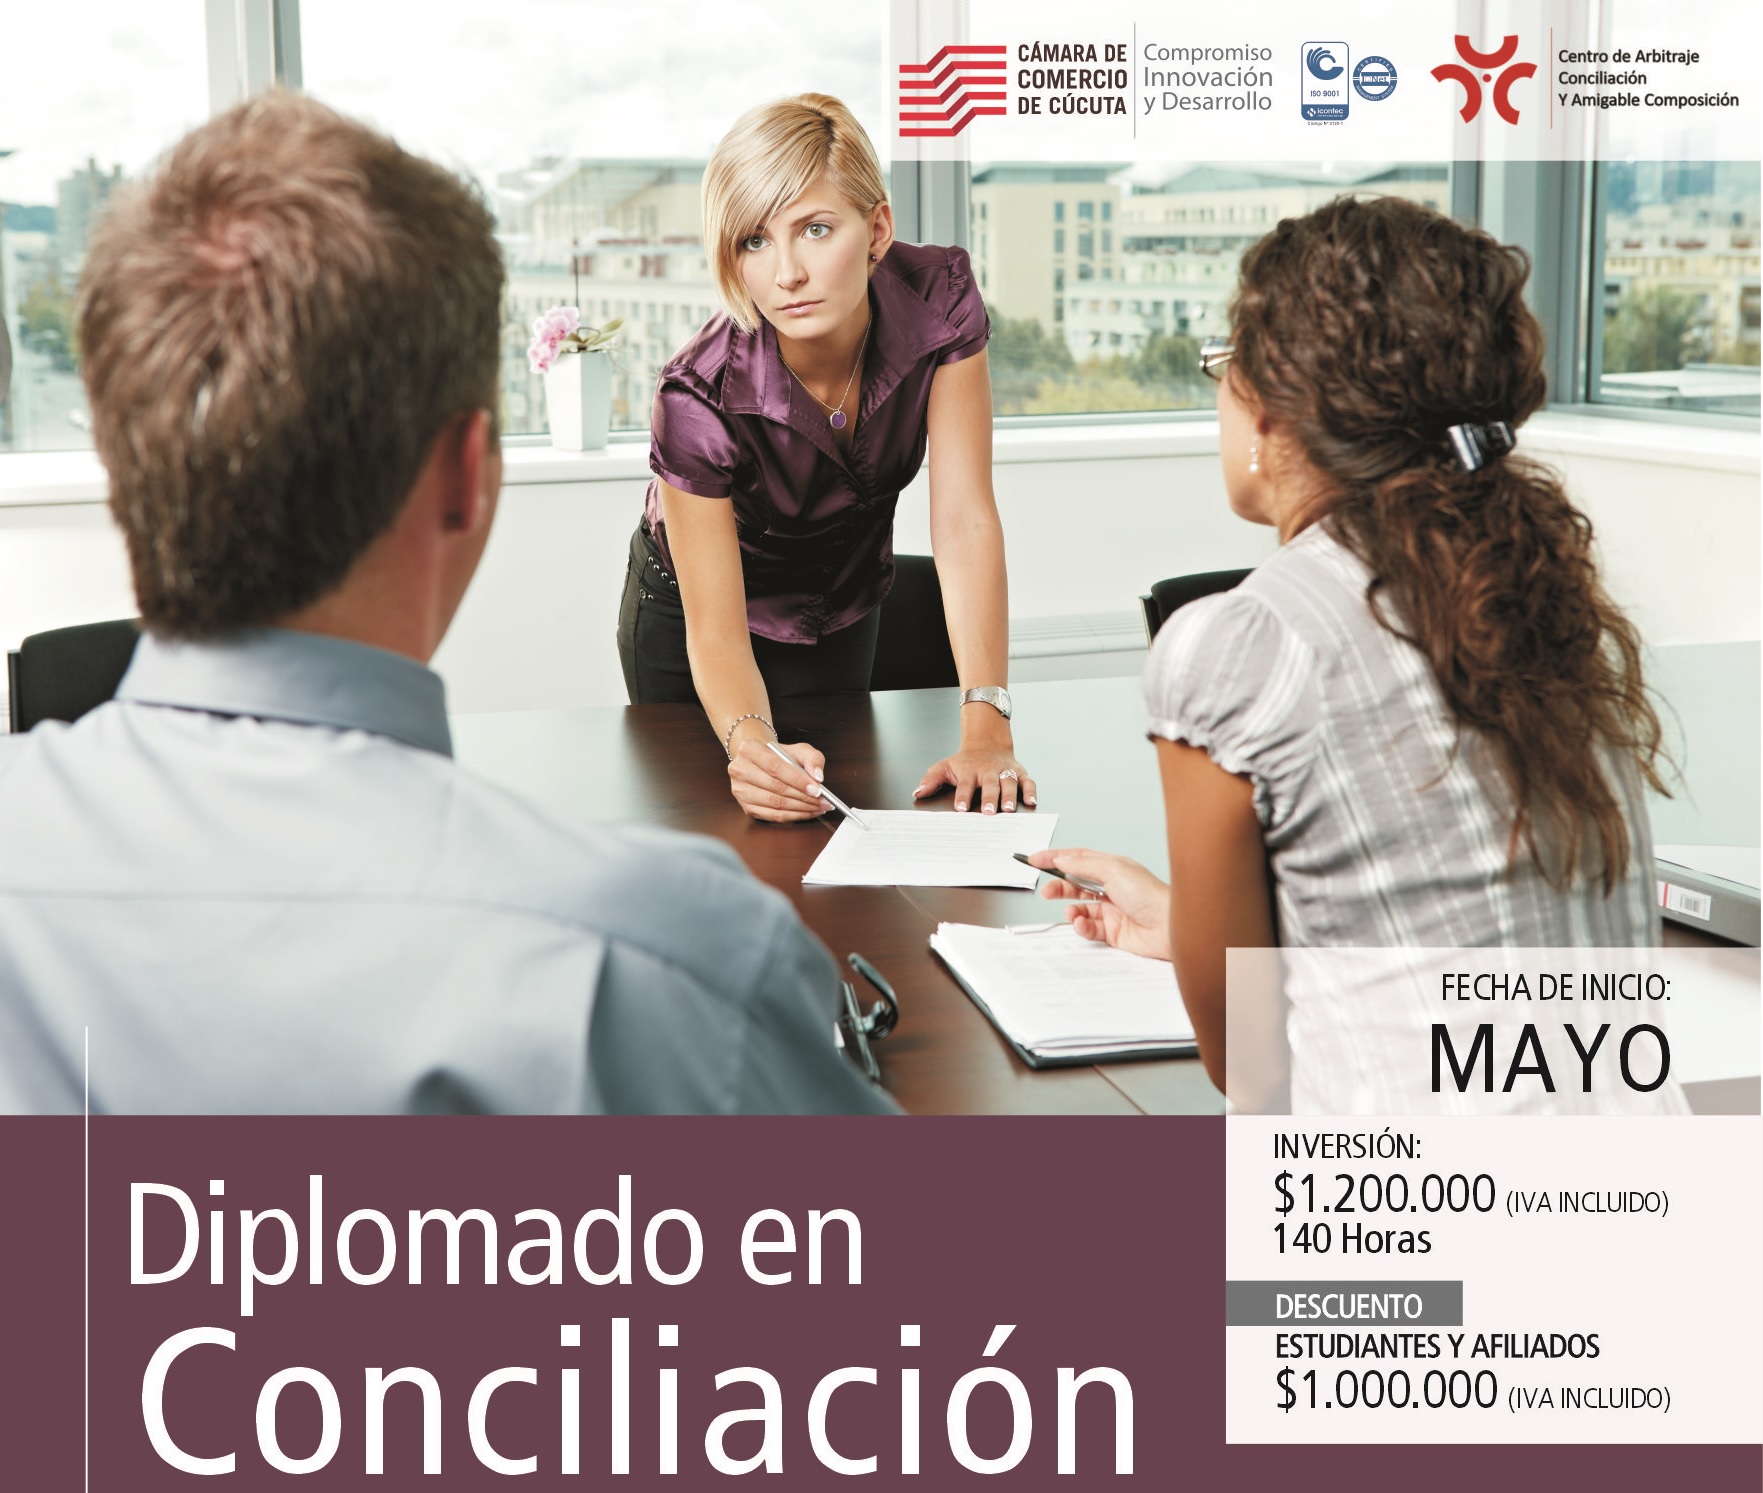 Inscripciones abiertas para Diplomado en Conciliacin